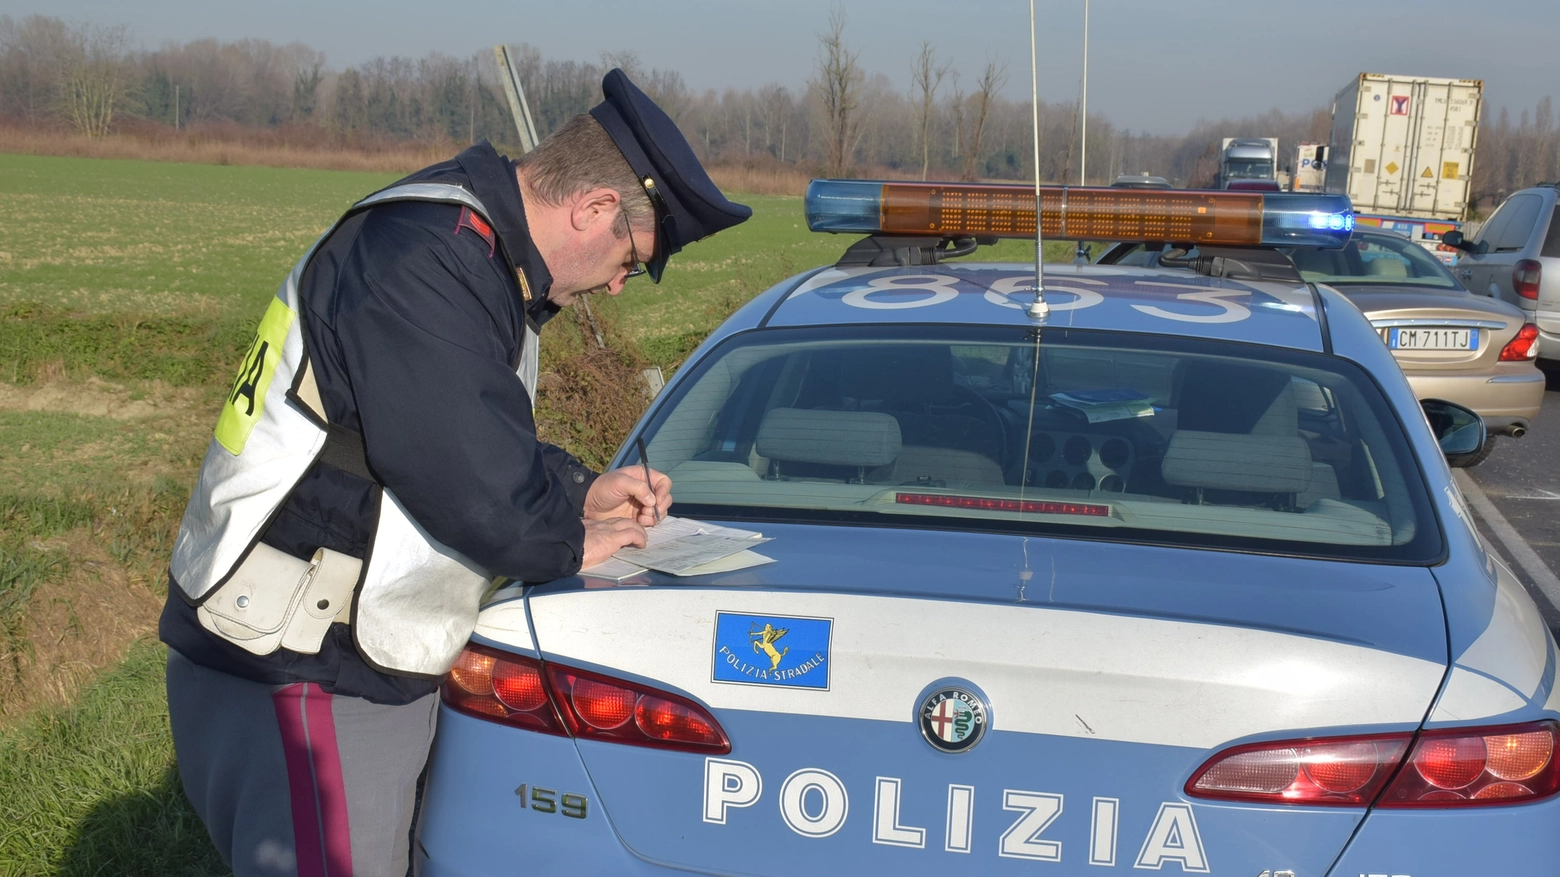 Le forze dell'ordine controllano le auto immatricolate nei paesi dell'Est